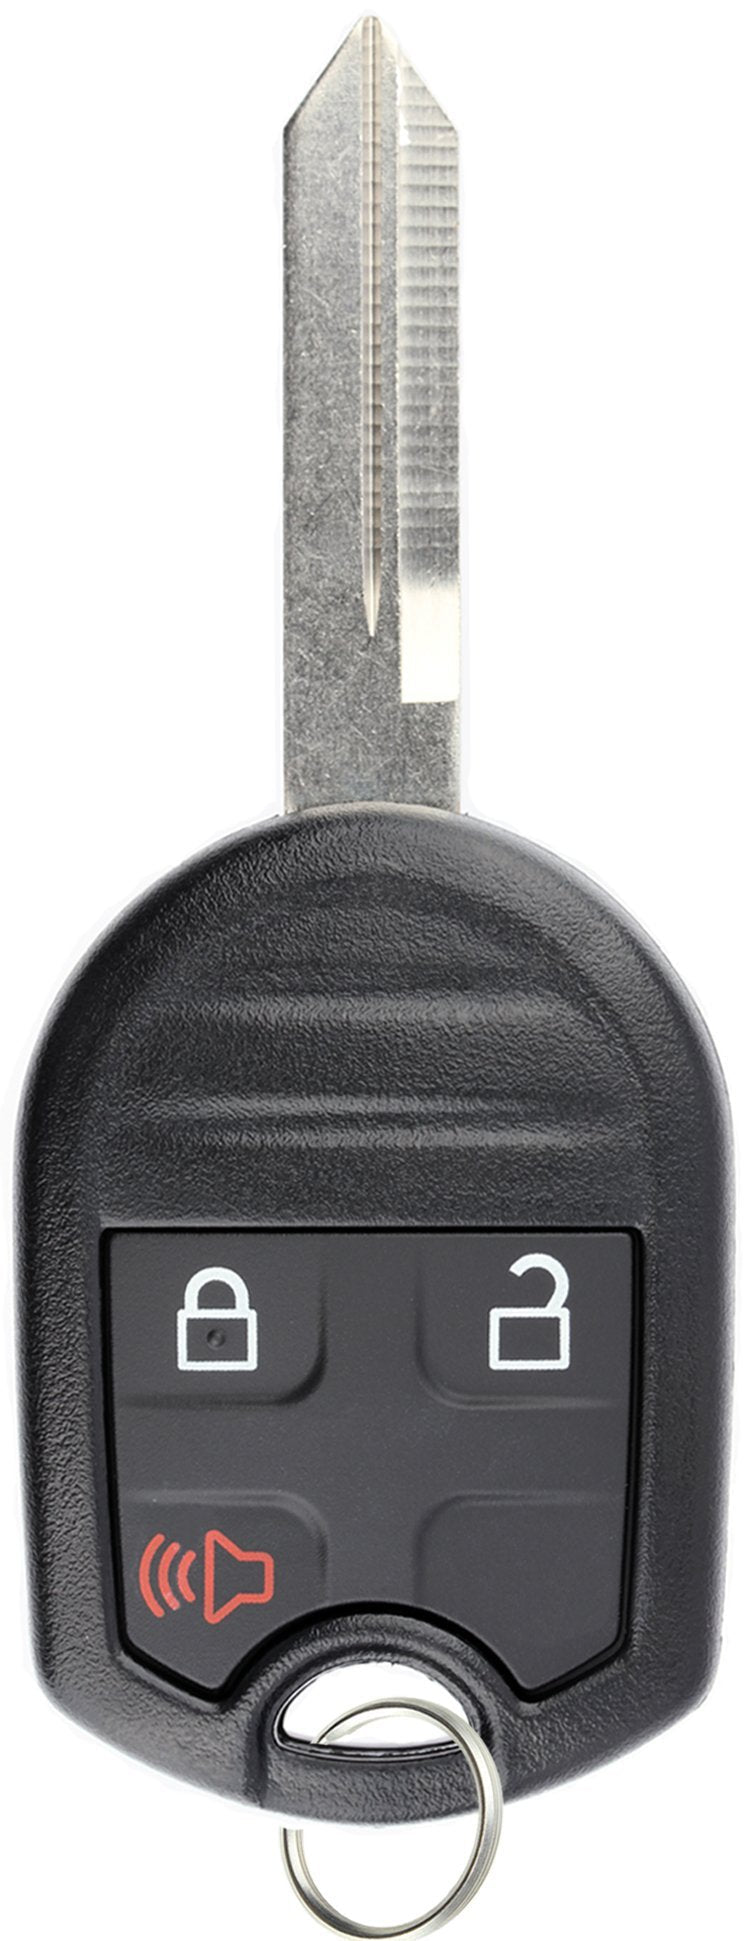  [AUSTRALIA] - KeylessOption Keyless Entry Remote Control Uncut Blank Car Ignition Key Fob Replacement for CWTWB1U793